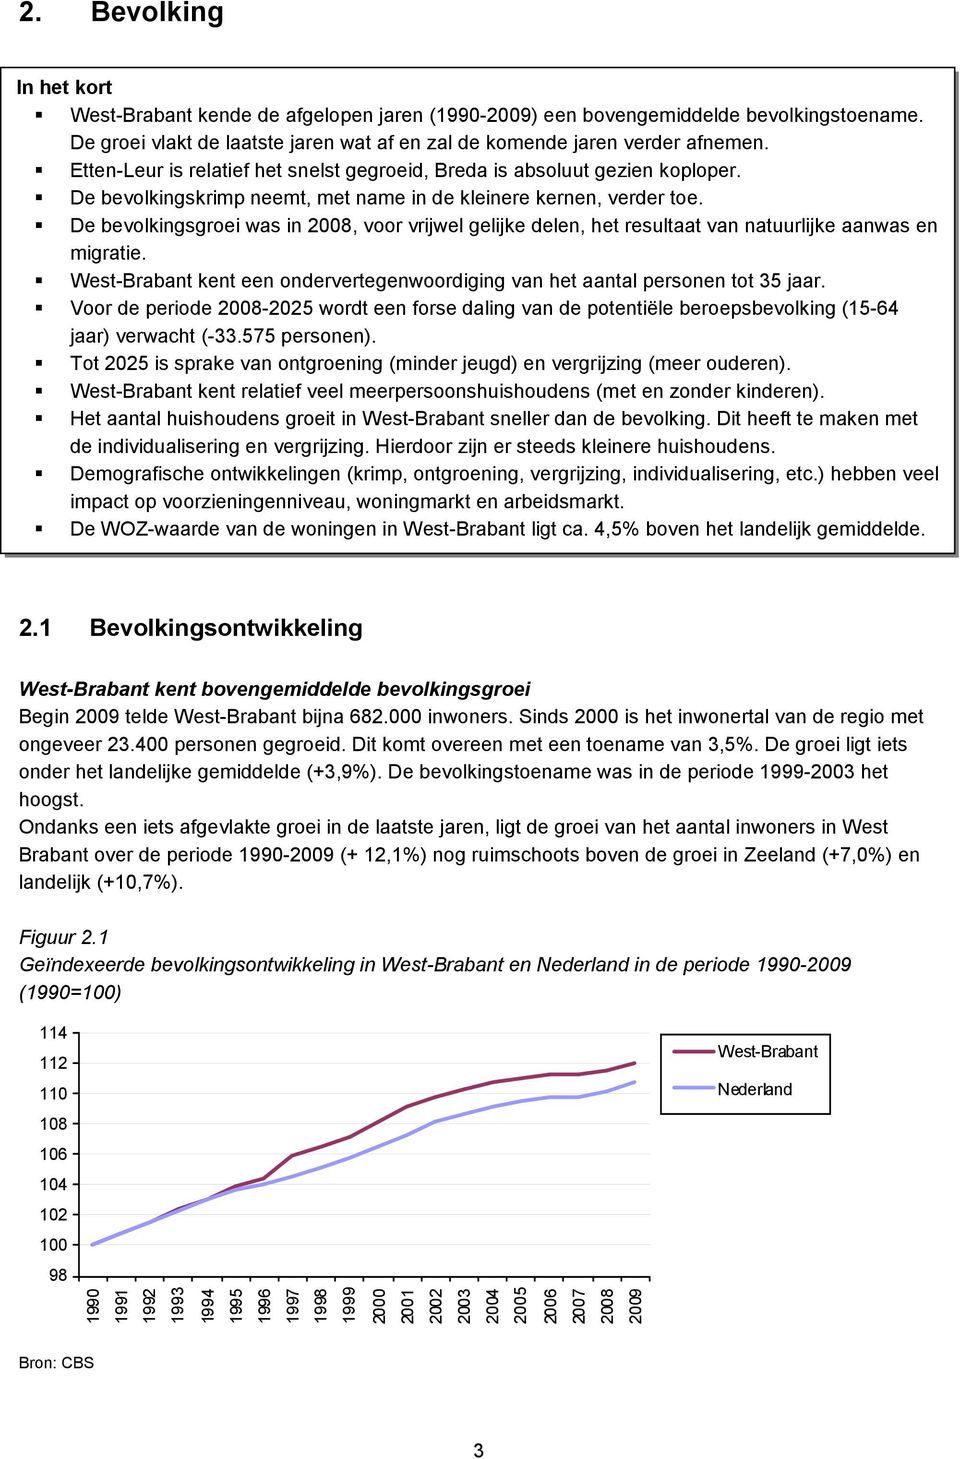 De bevolkingsgroei was in 2008, voor vrijwel gelijke delen, het resultaat van natuurlijke aanwas en migratie. West-Brabant kent een ondervertegenwoordiging van het aantal personen tot 35 jaar.